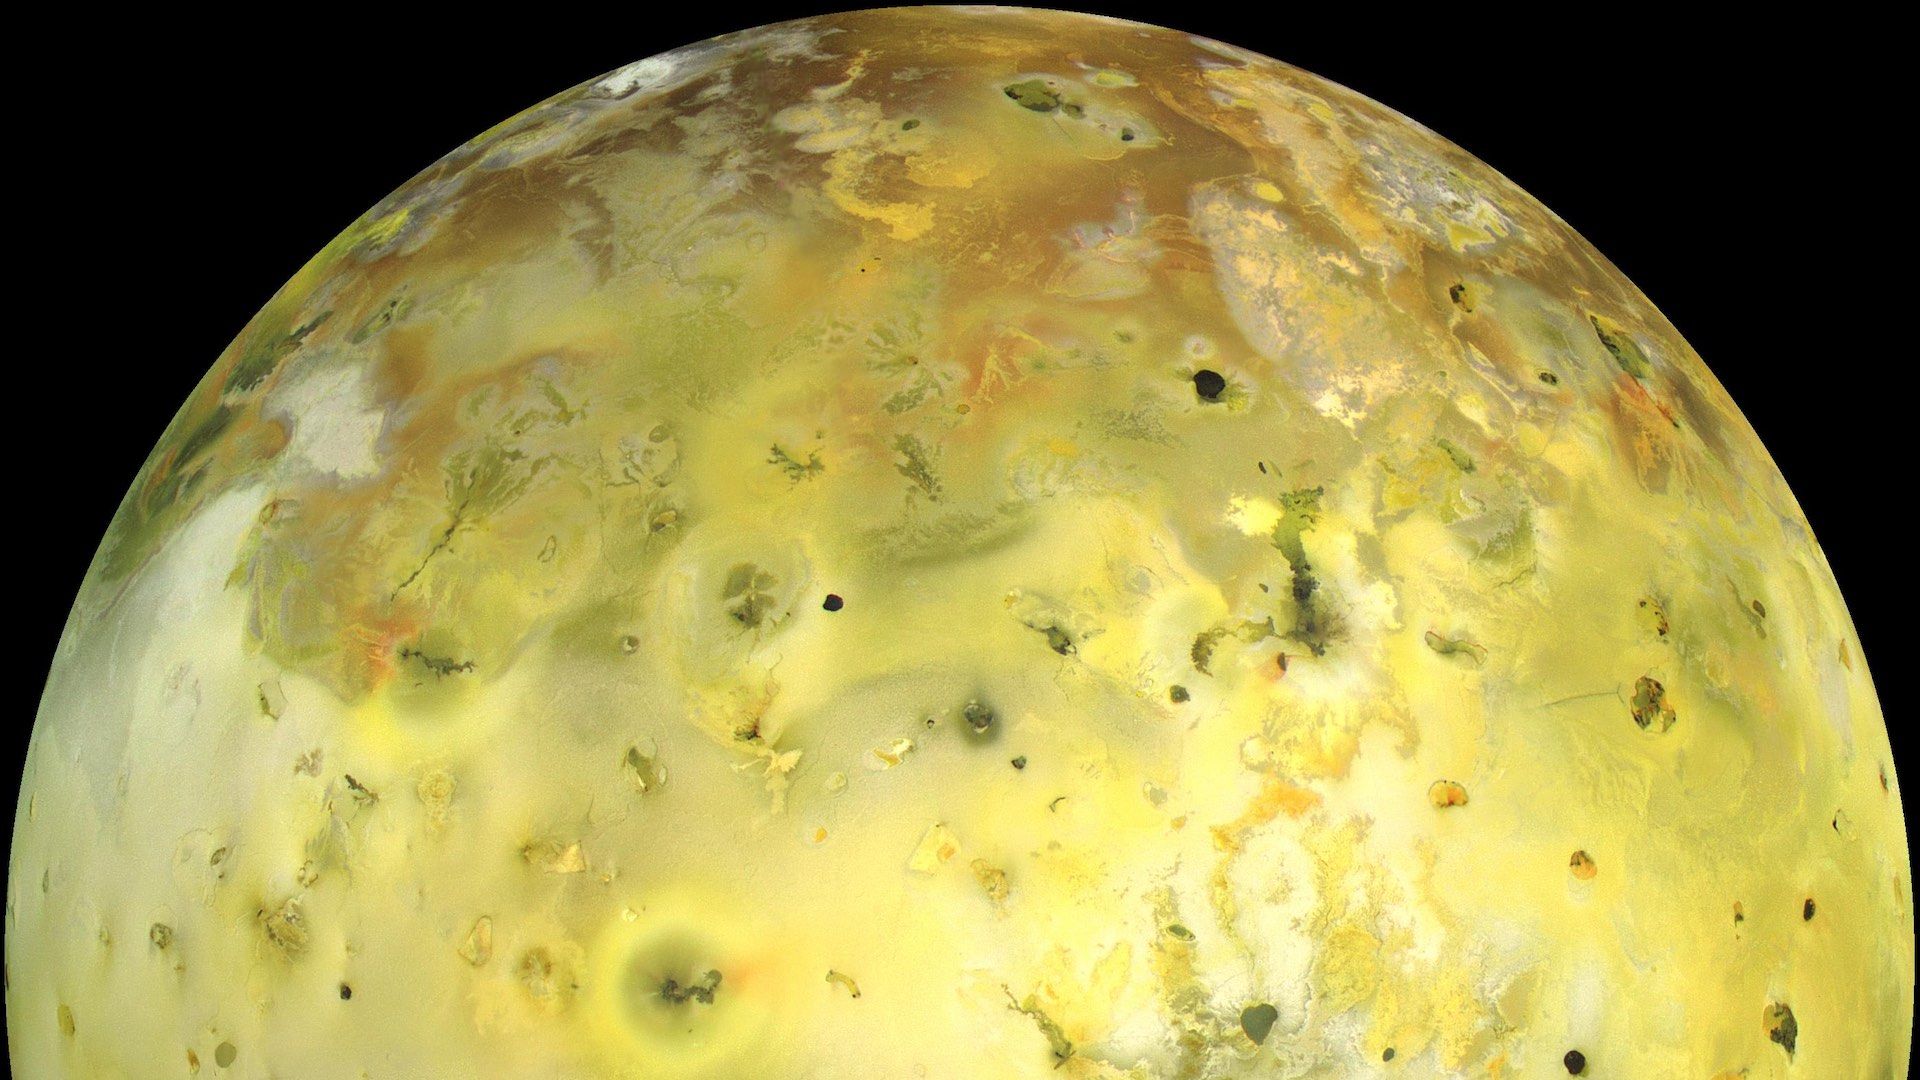 Jupiter's moon Io seen from orbit